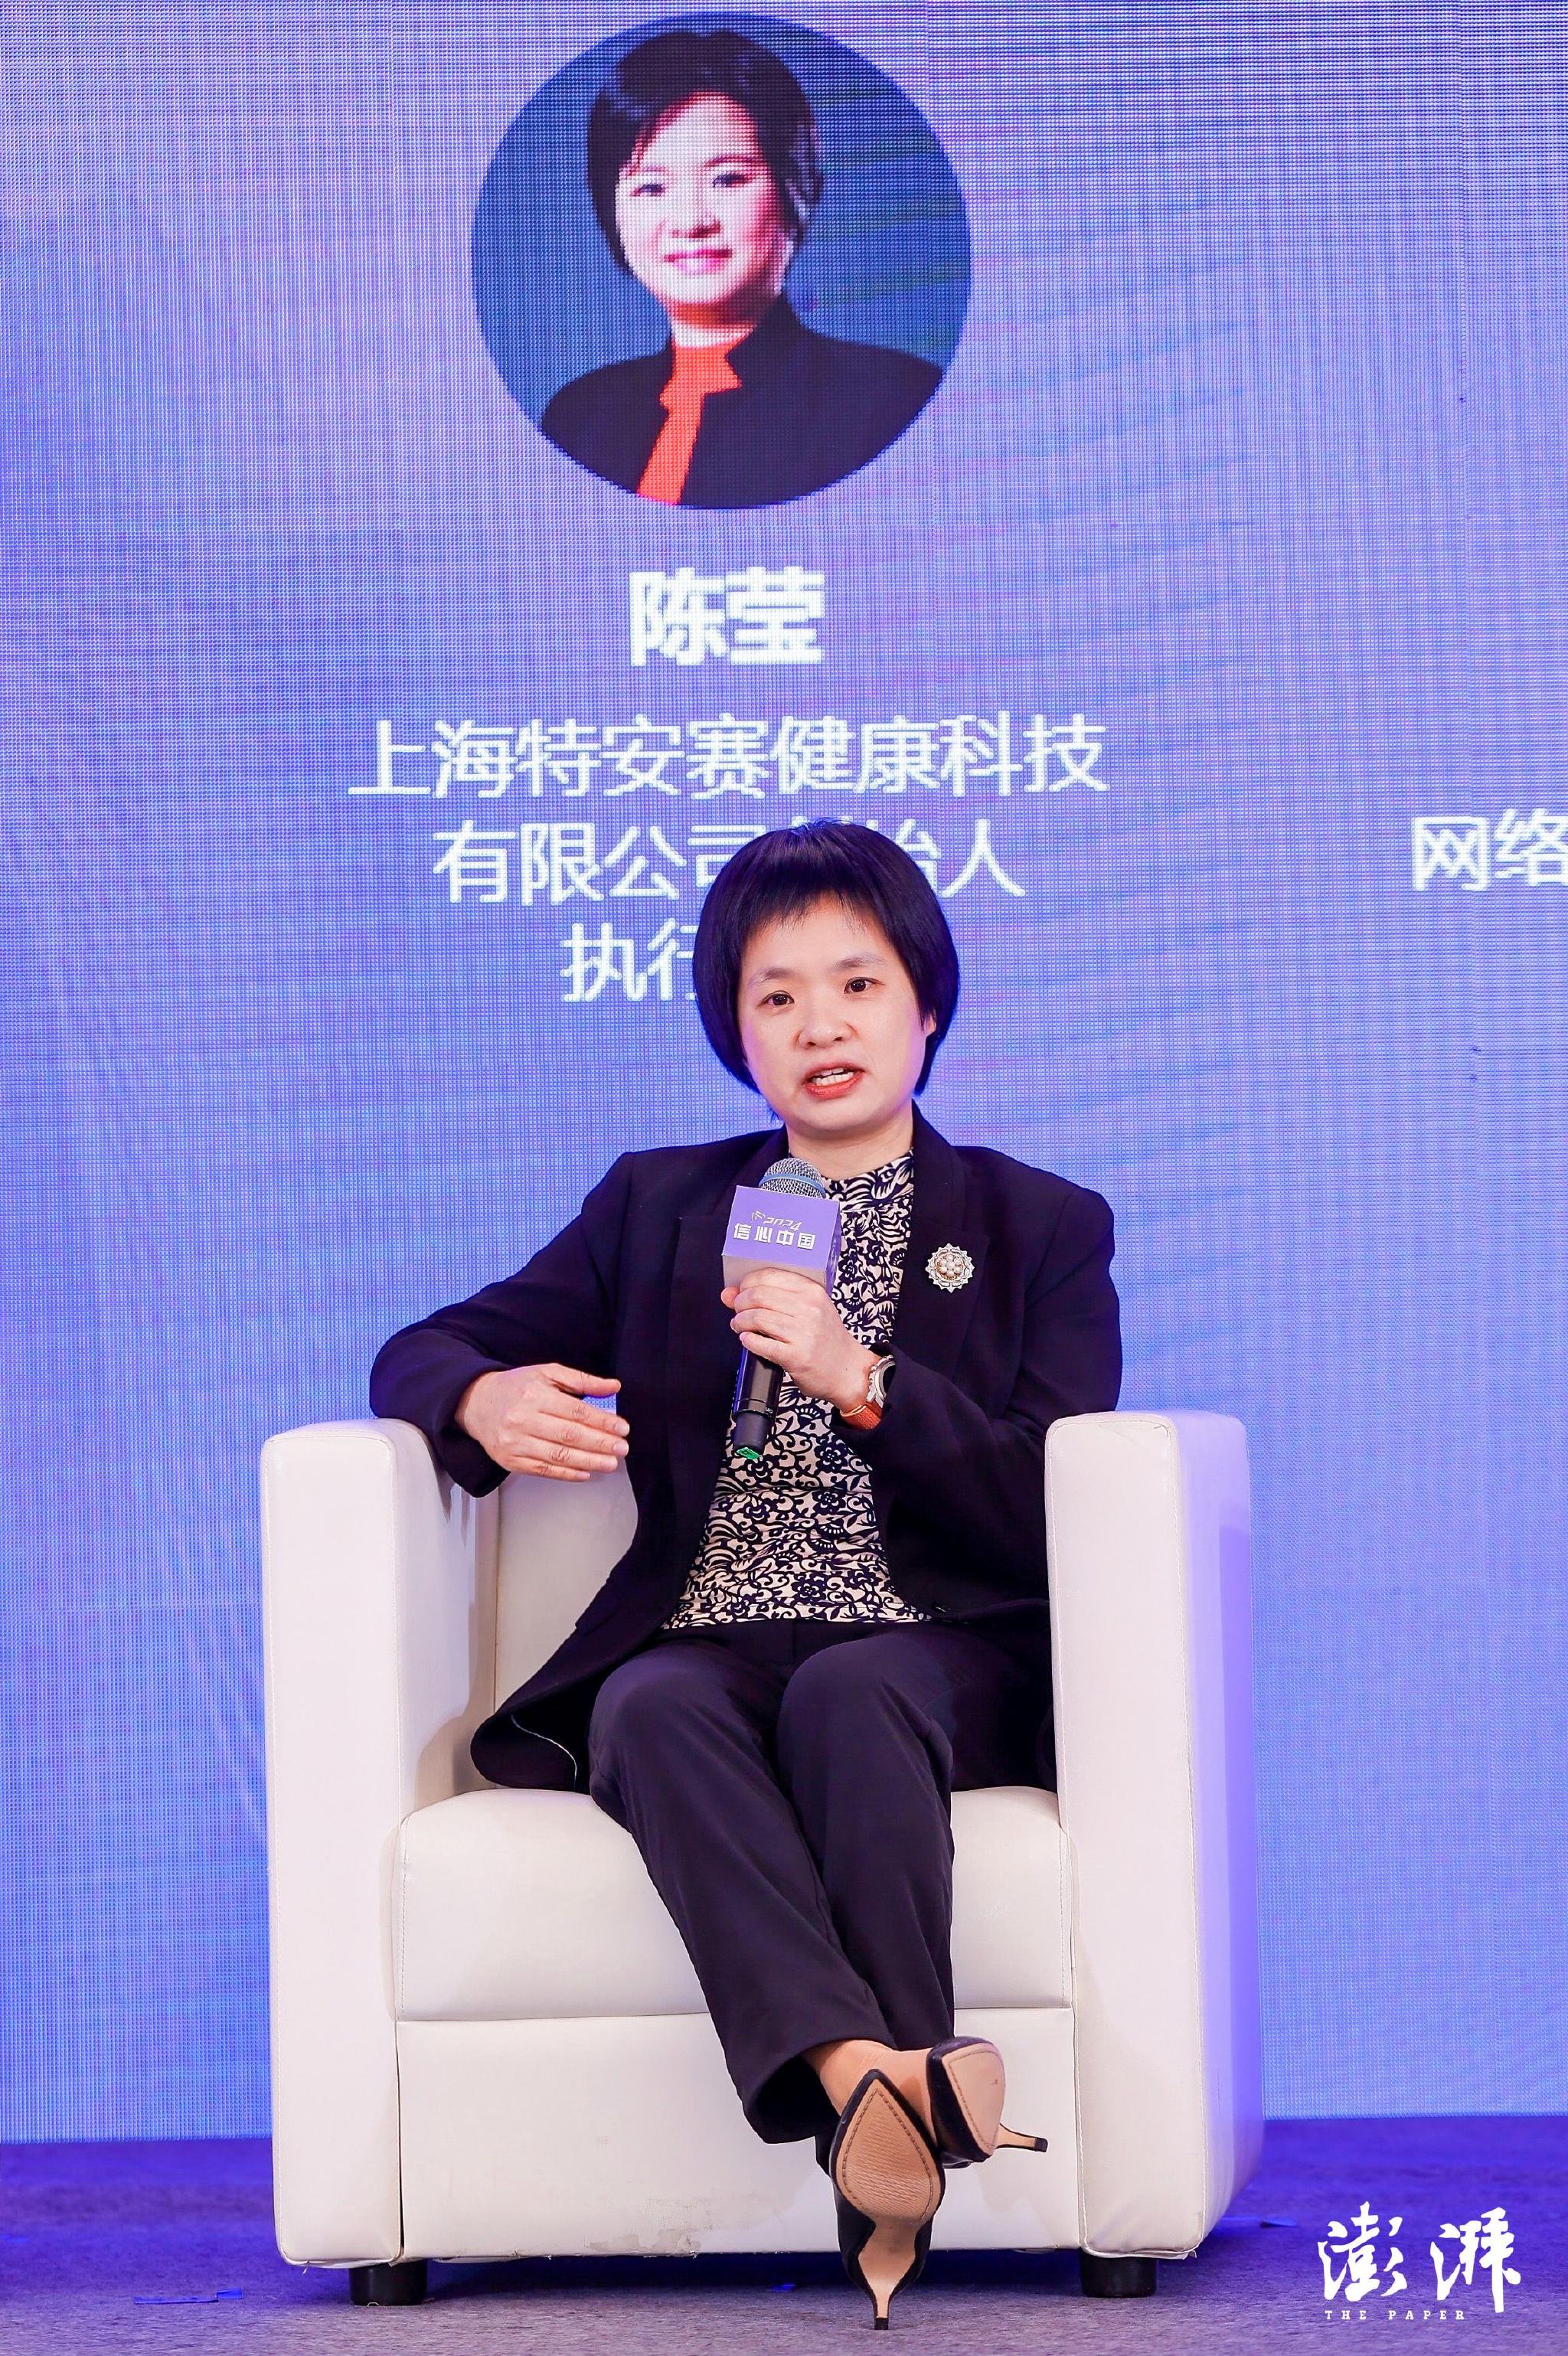 上海特安赛健康科技有限公司创始人及执行董事陈莹